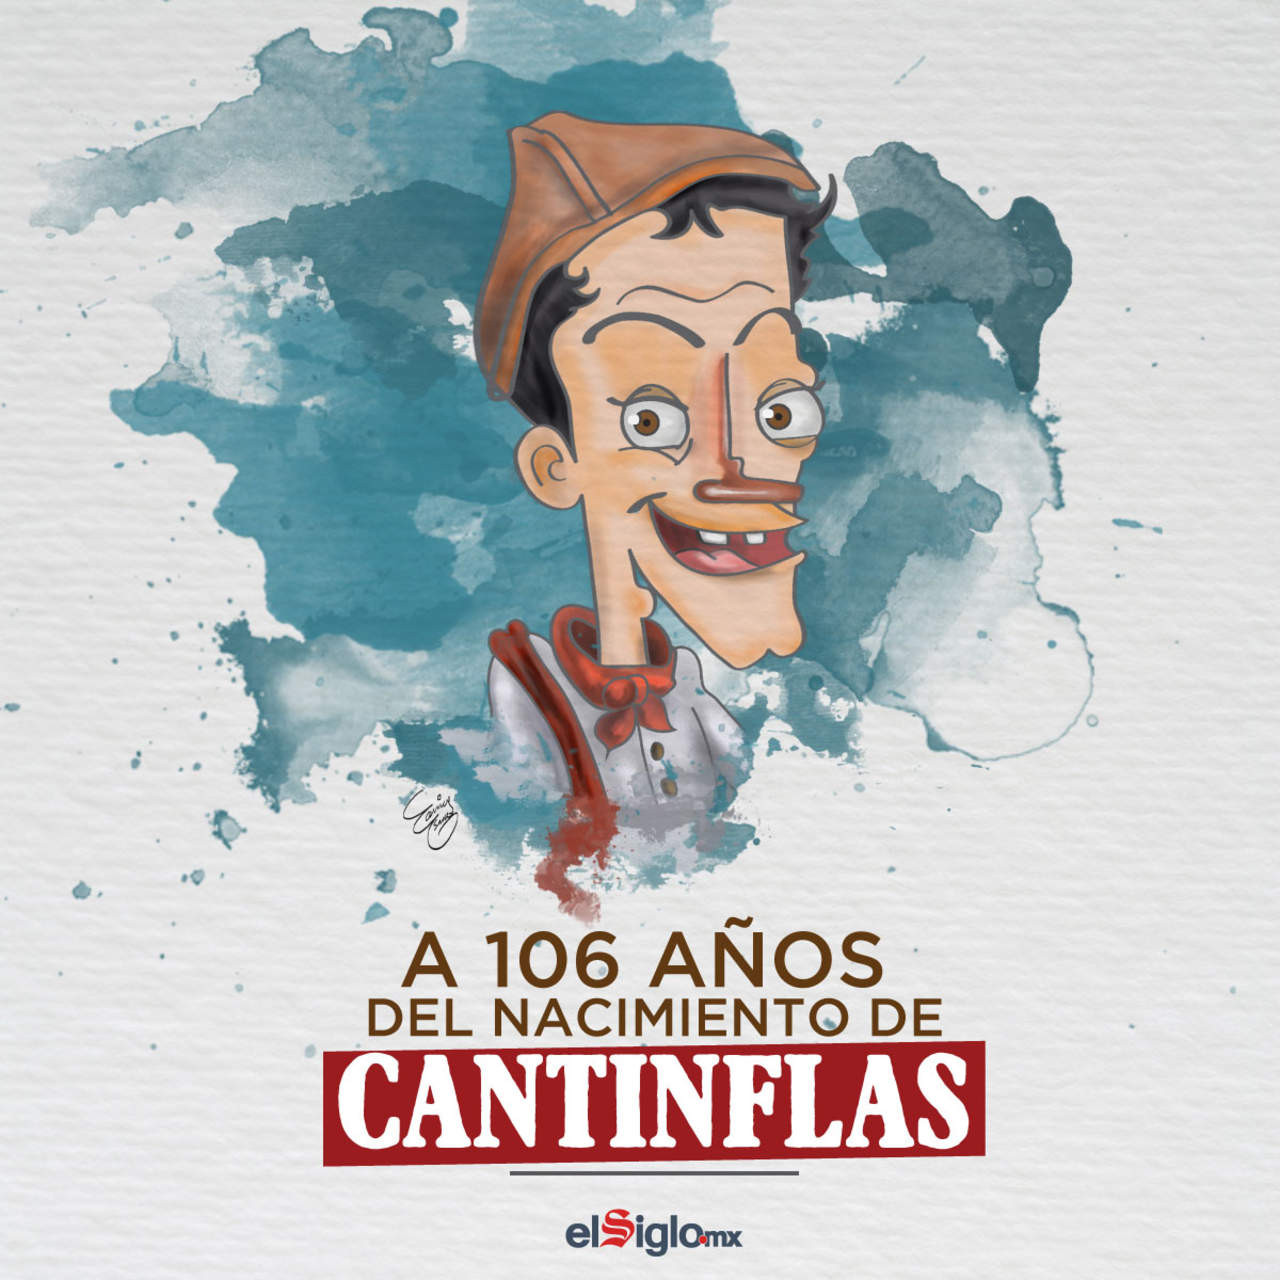 Su legendario personaje “Cantinflas”, inspirado en un barrendero borrachito que conoció cuando trabajaba en el Teatro Follies, representó al pelado de los 30.